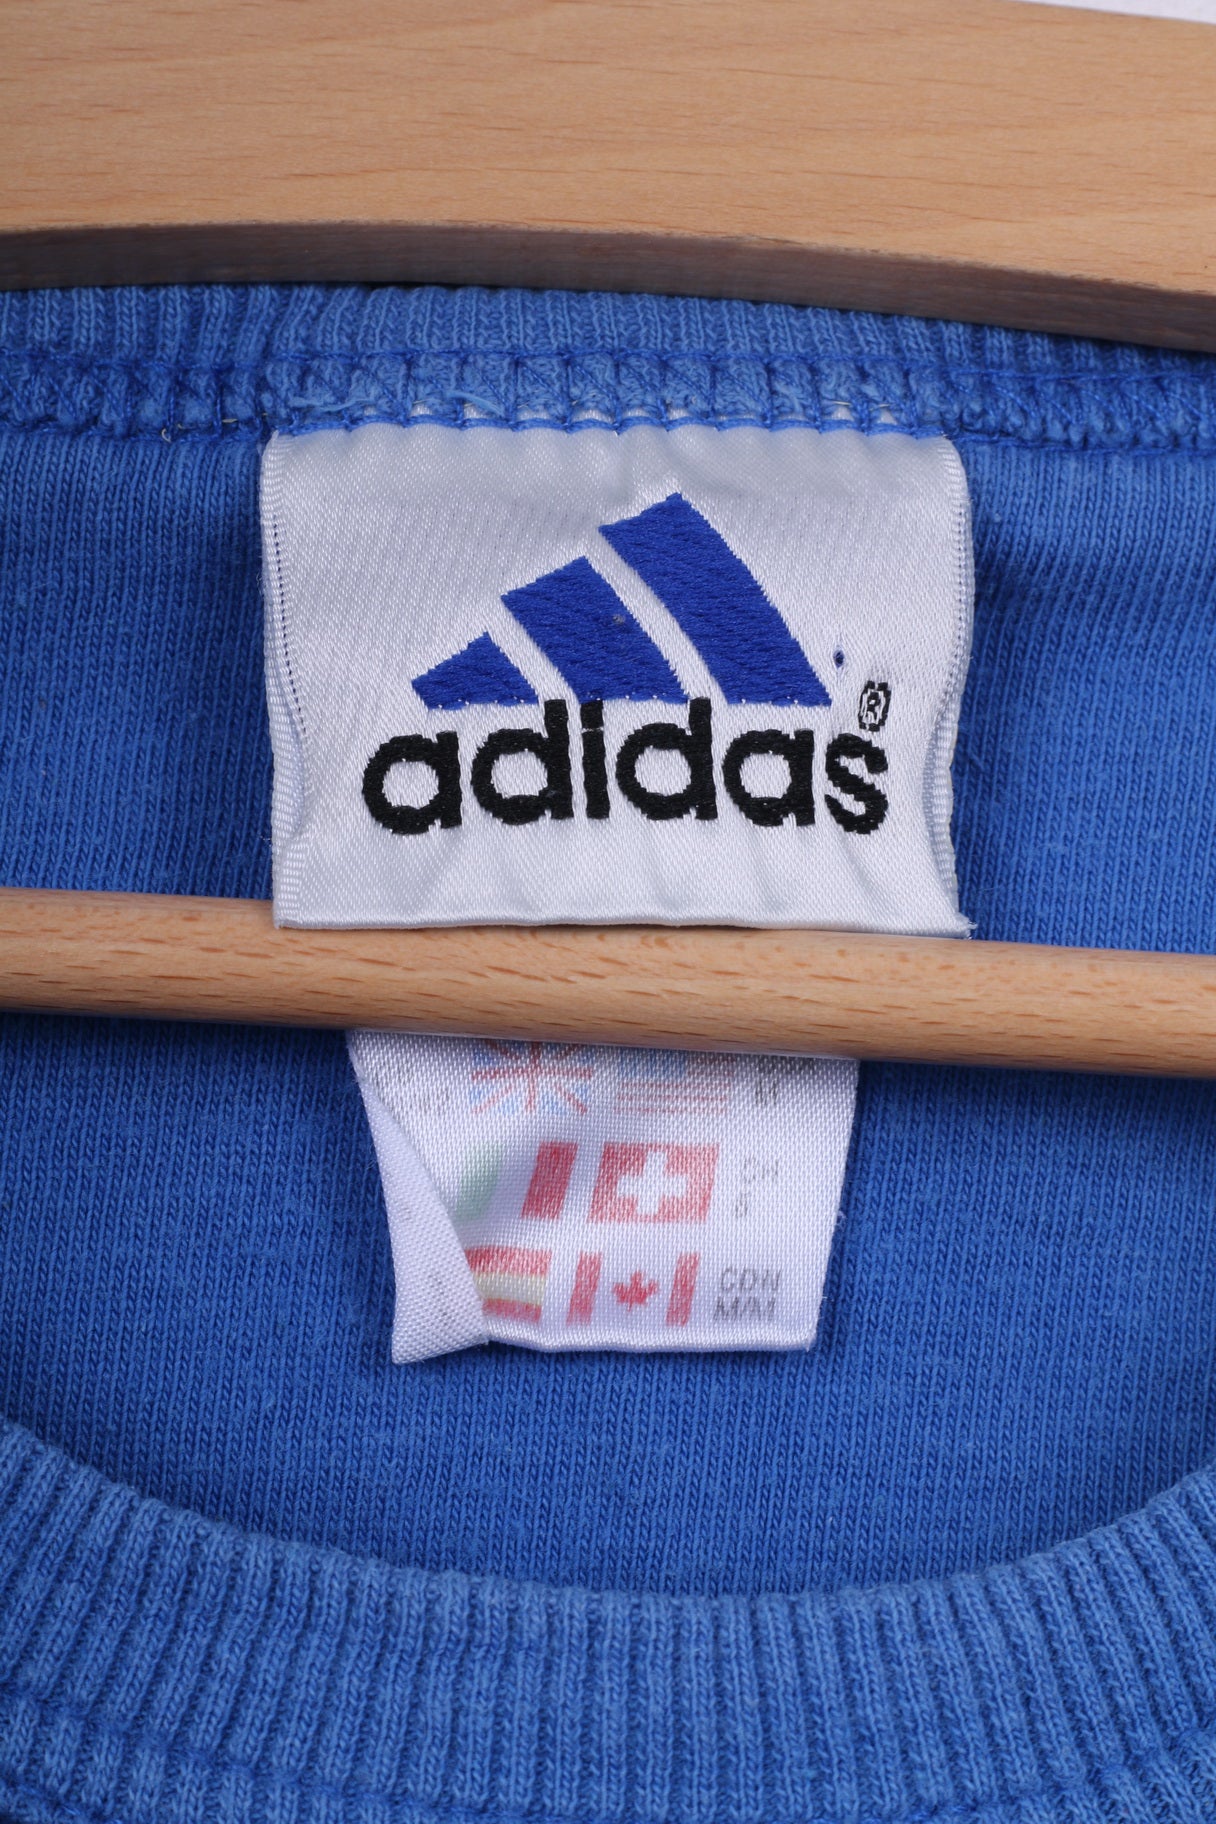 Adidas Mens 40/42 M T-Shirt Graphic Blue Crew Neck Cotton Vintage